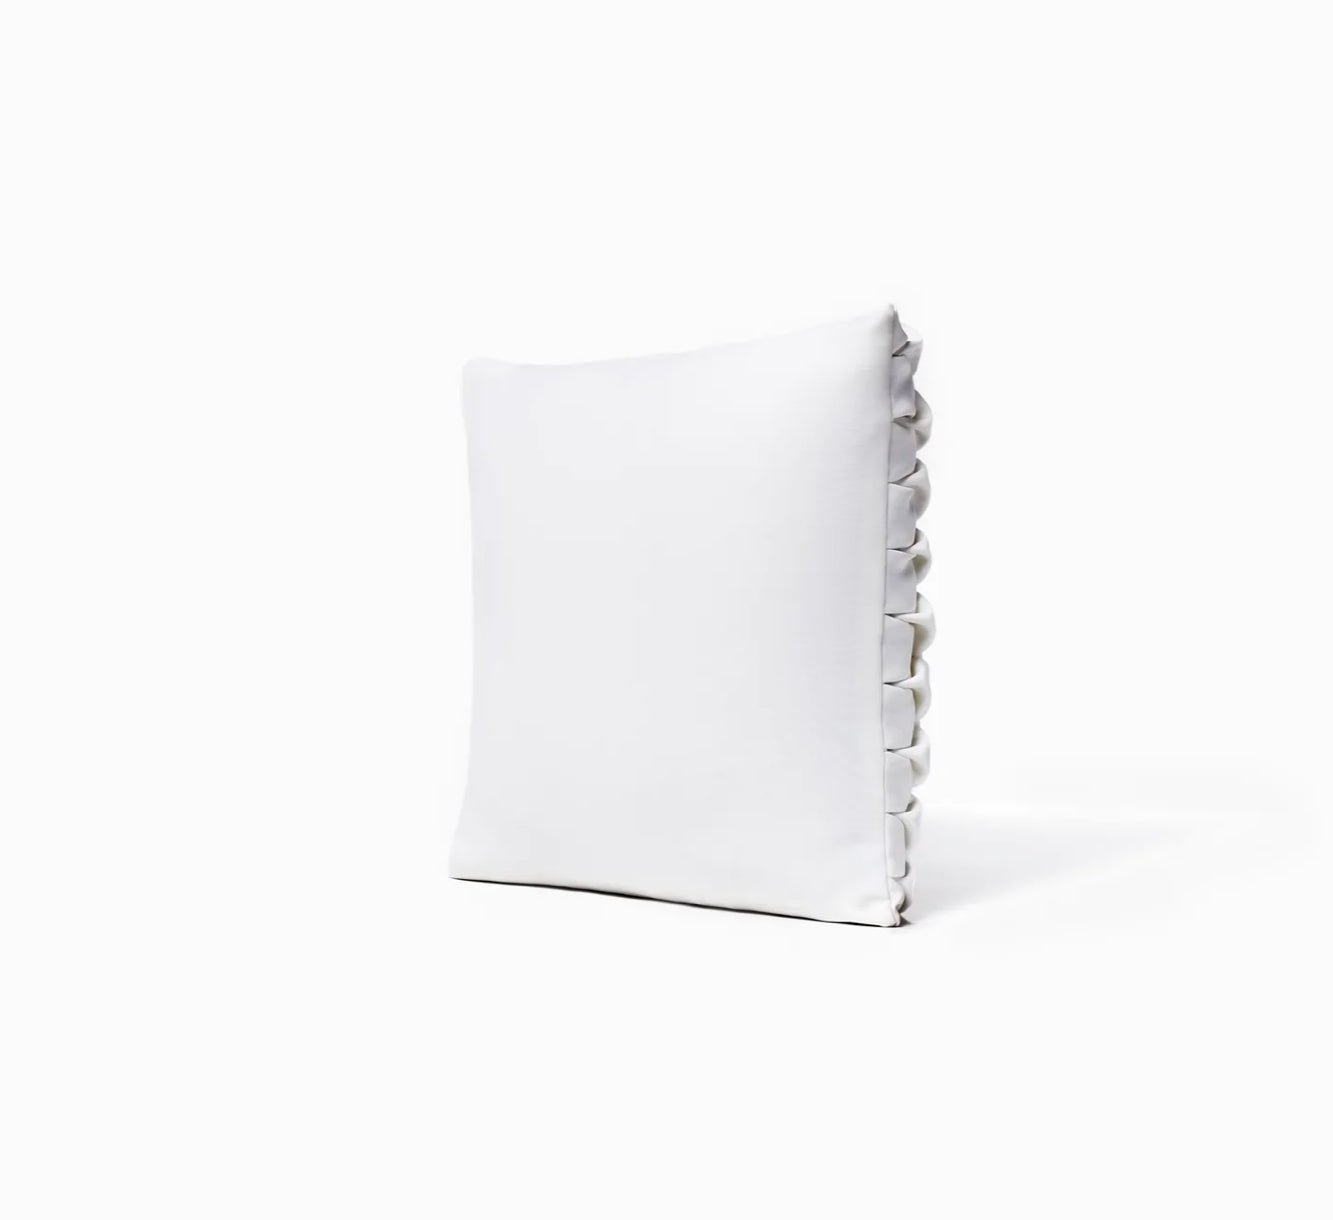 Flo Home Delight Neosmock-Kissen in Weiß/Rose’ aus Neopren, wahlweise in ca. 40x40x5cm oder 30x50x5cm - Bitangel RENOVATE & FURNISH HOMES GmbH